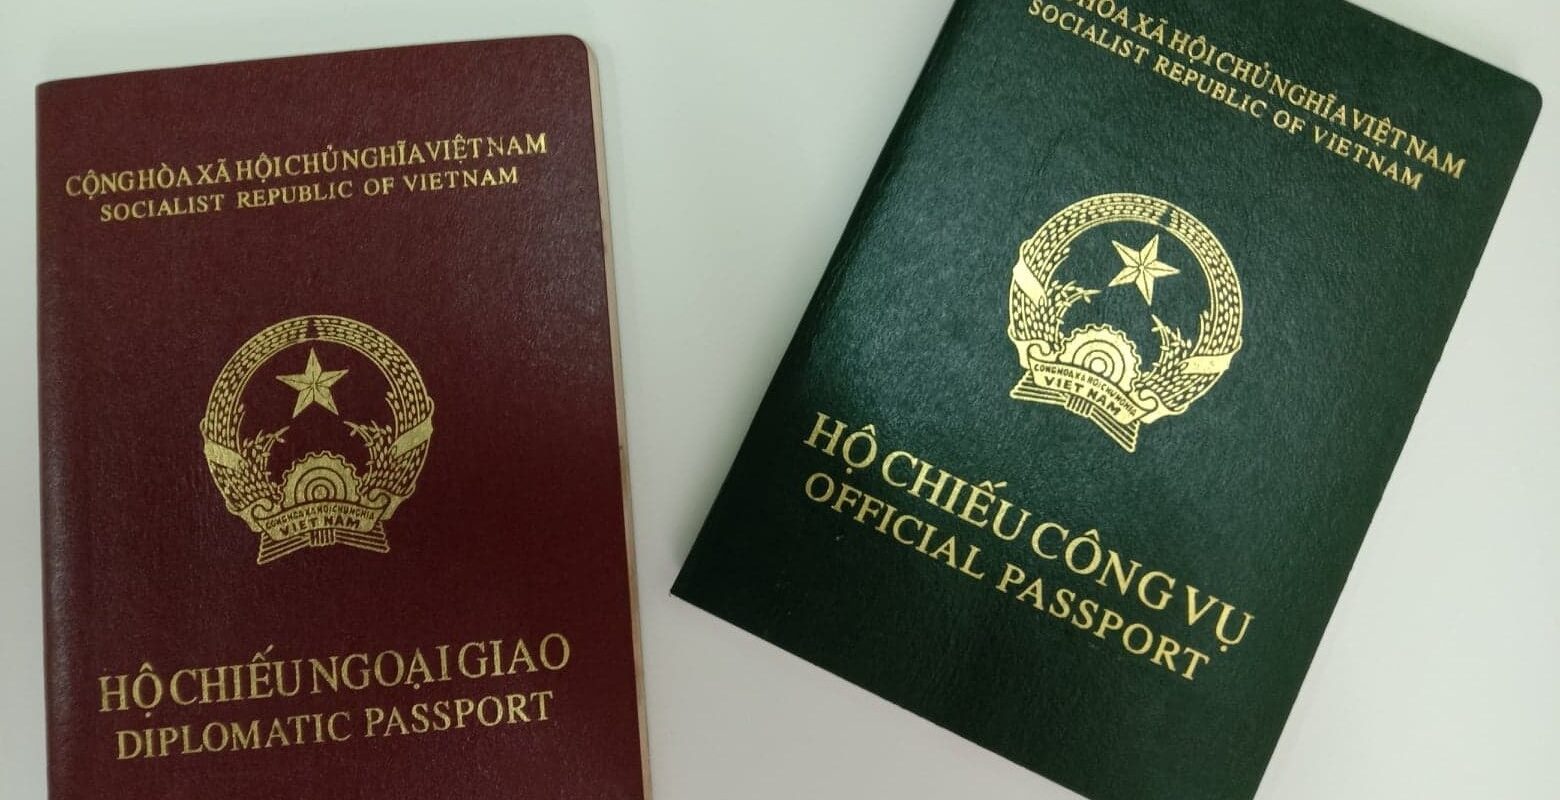 Hộ chiếu công vụ và hộ chiếu ngoại giao khác nhau như thế nào?